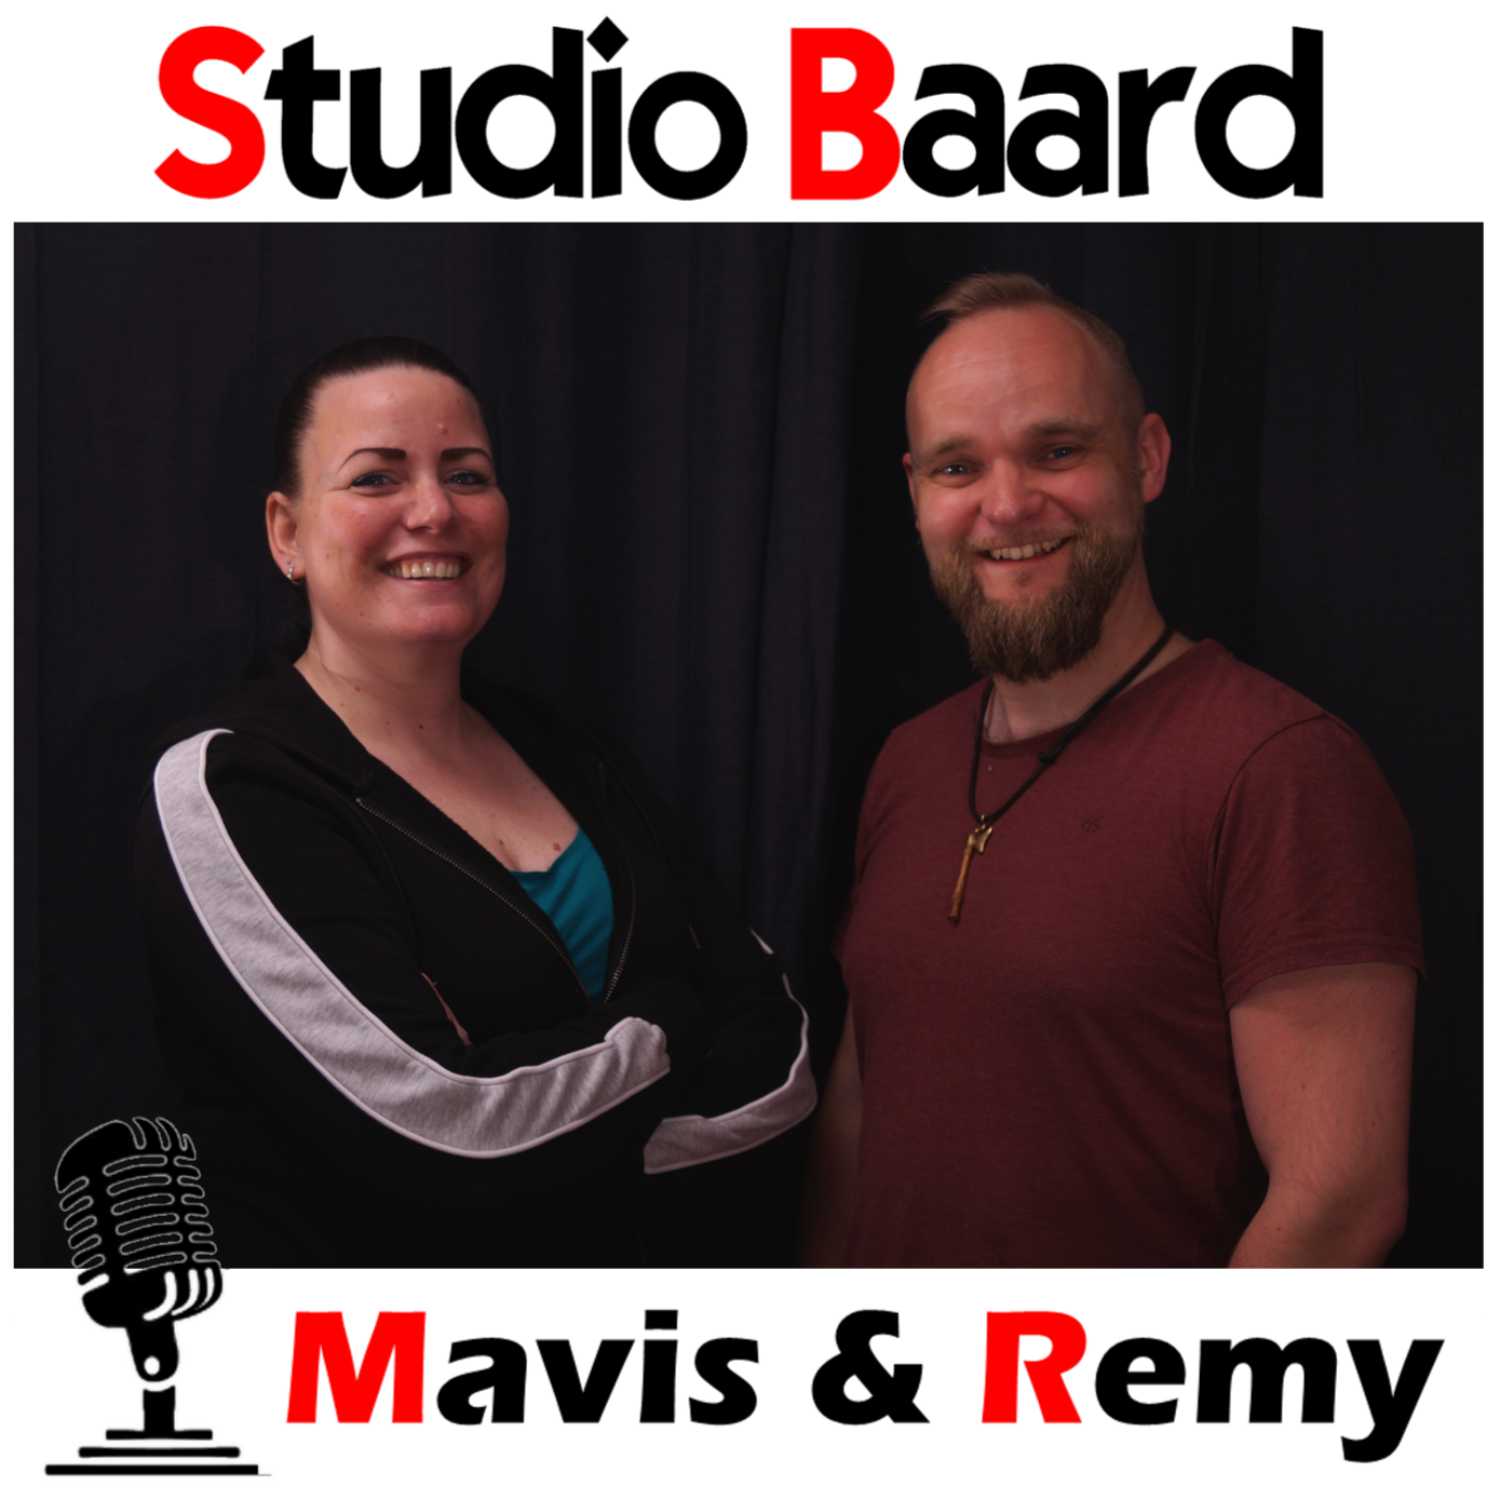 Studio Baard met Mavis en Remy (deel 1)